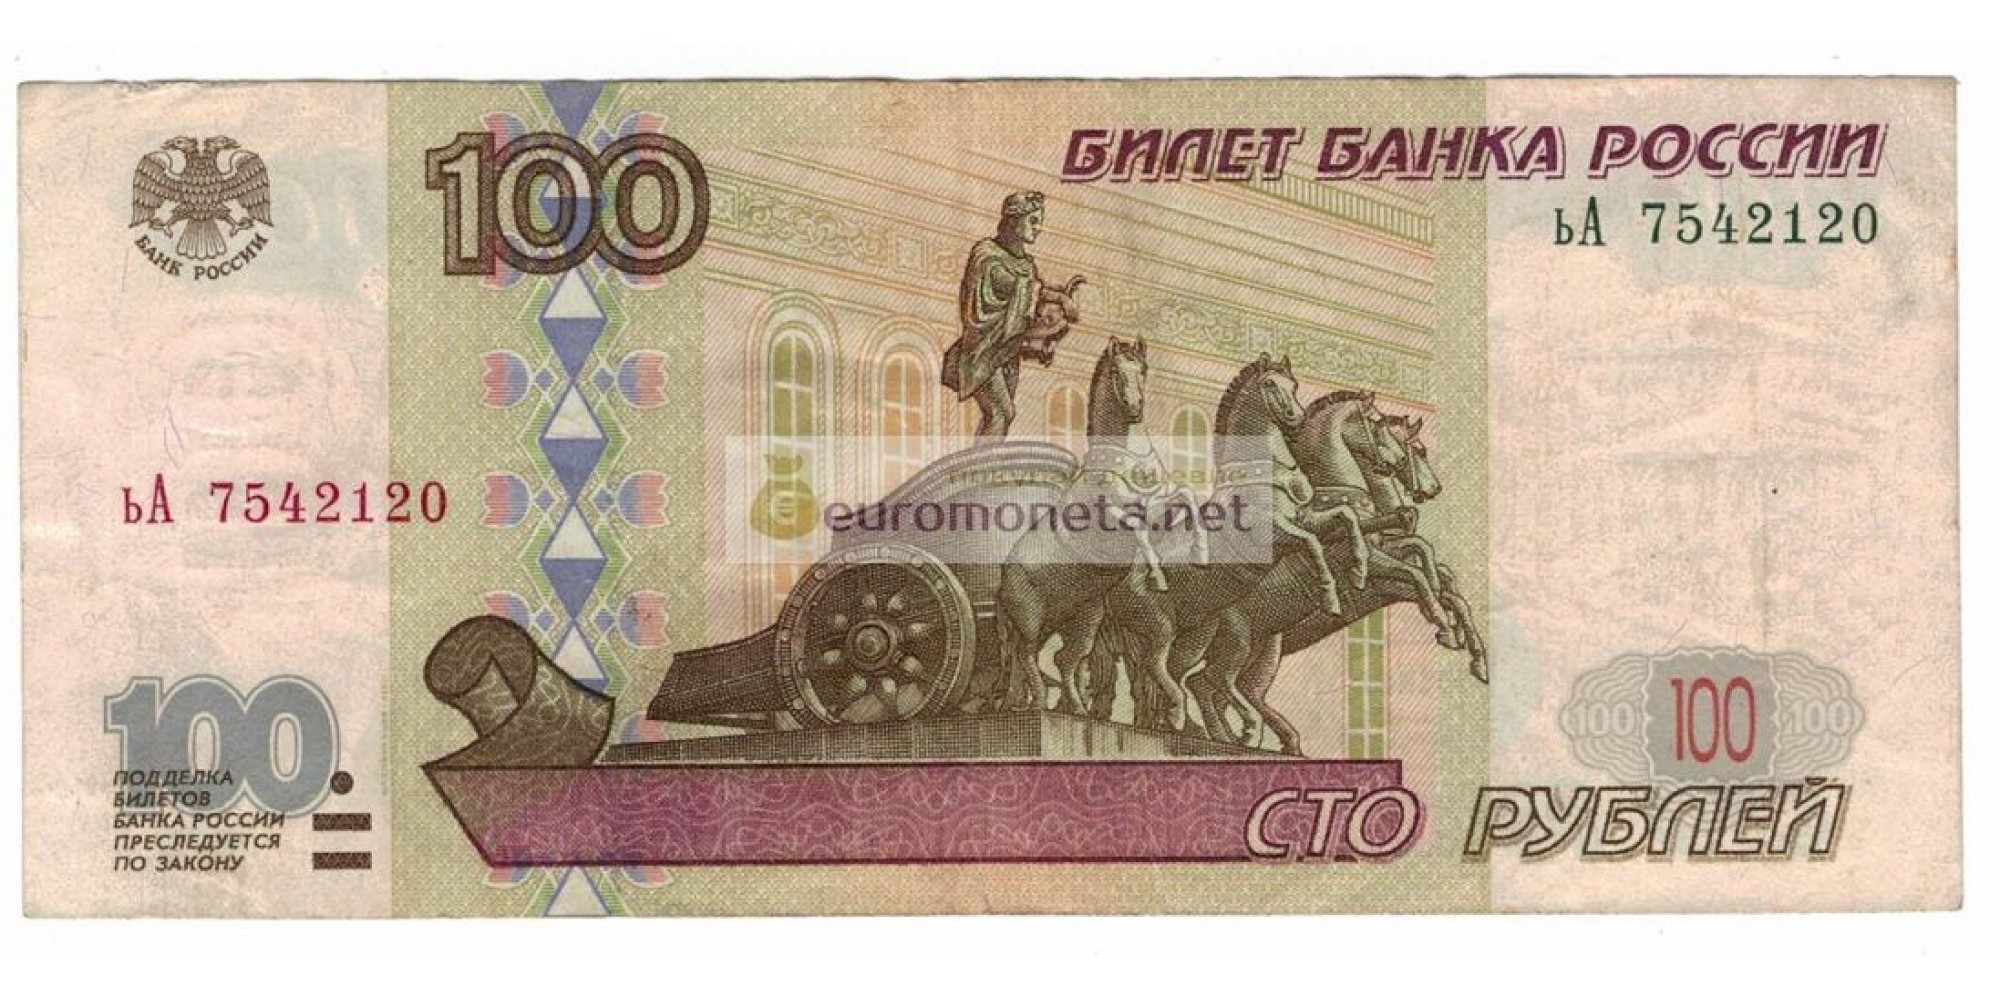 Россия 100 рублей 1997 год модификация 2001 год серия ьА 7542120